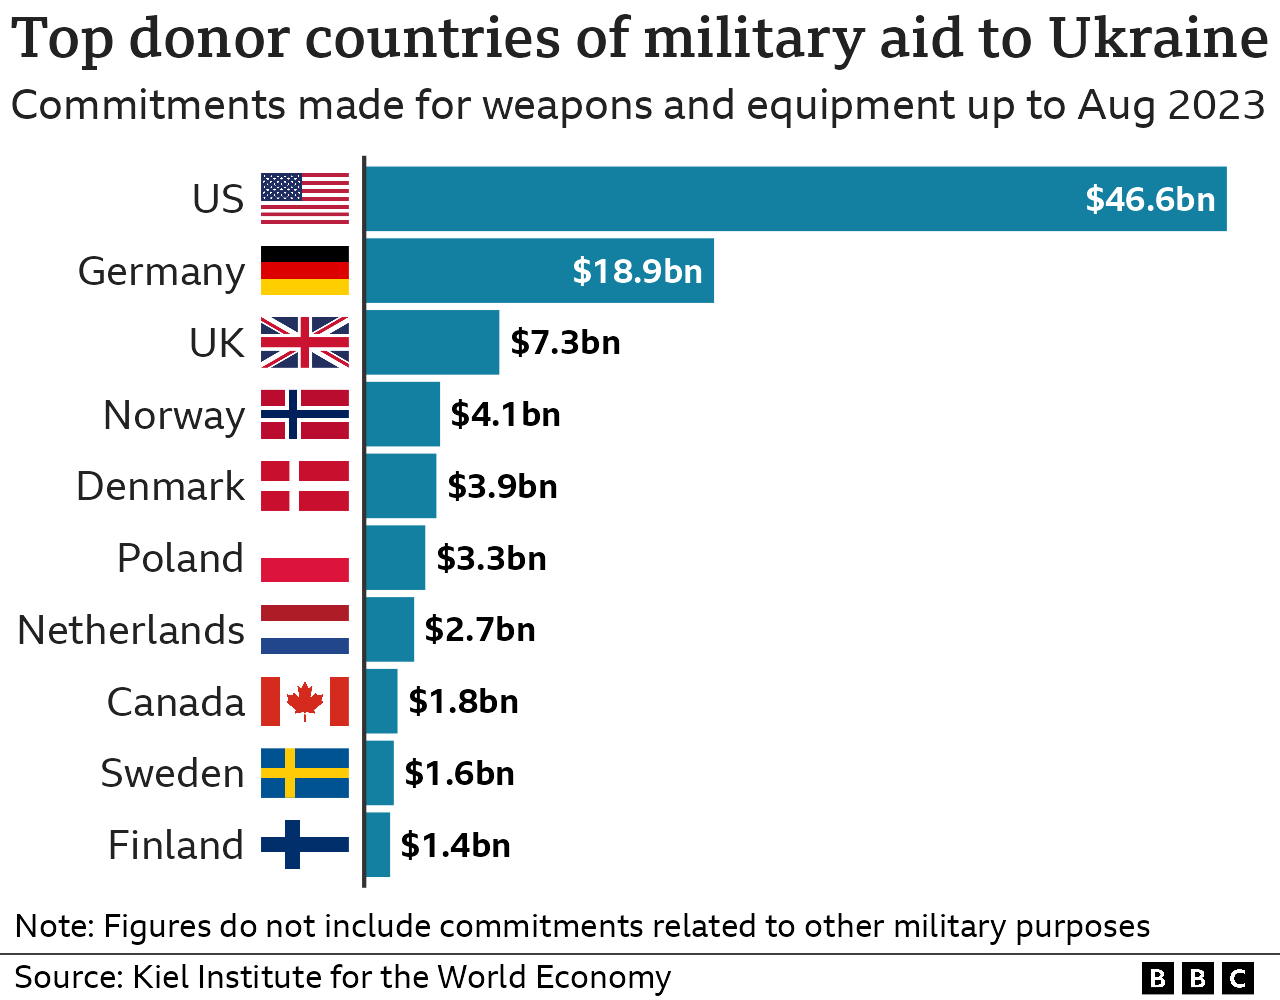 Größter Geber von Militärhilfe für die Ukraine